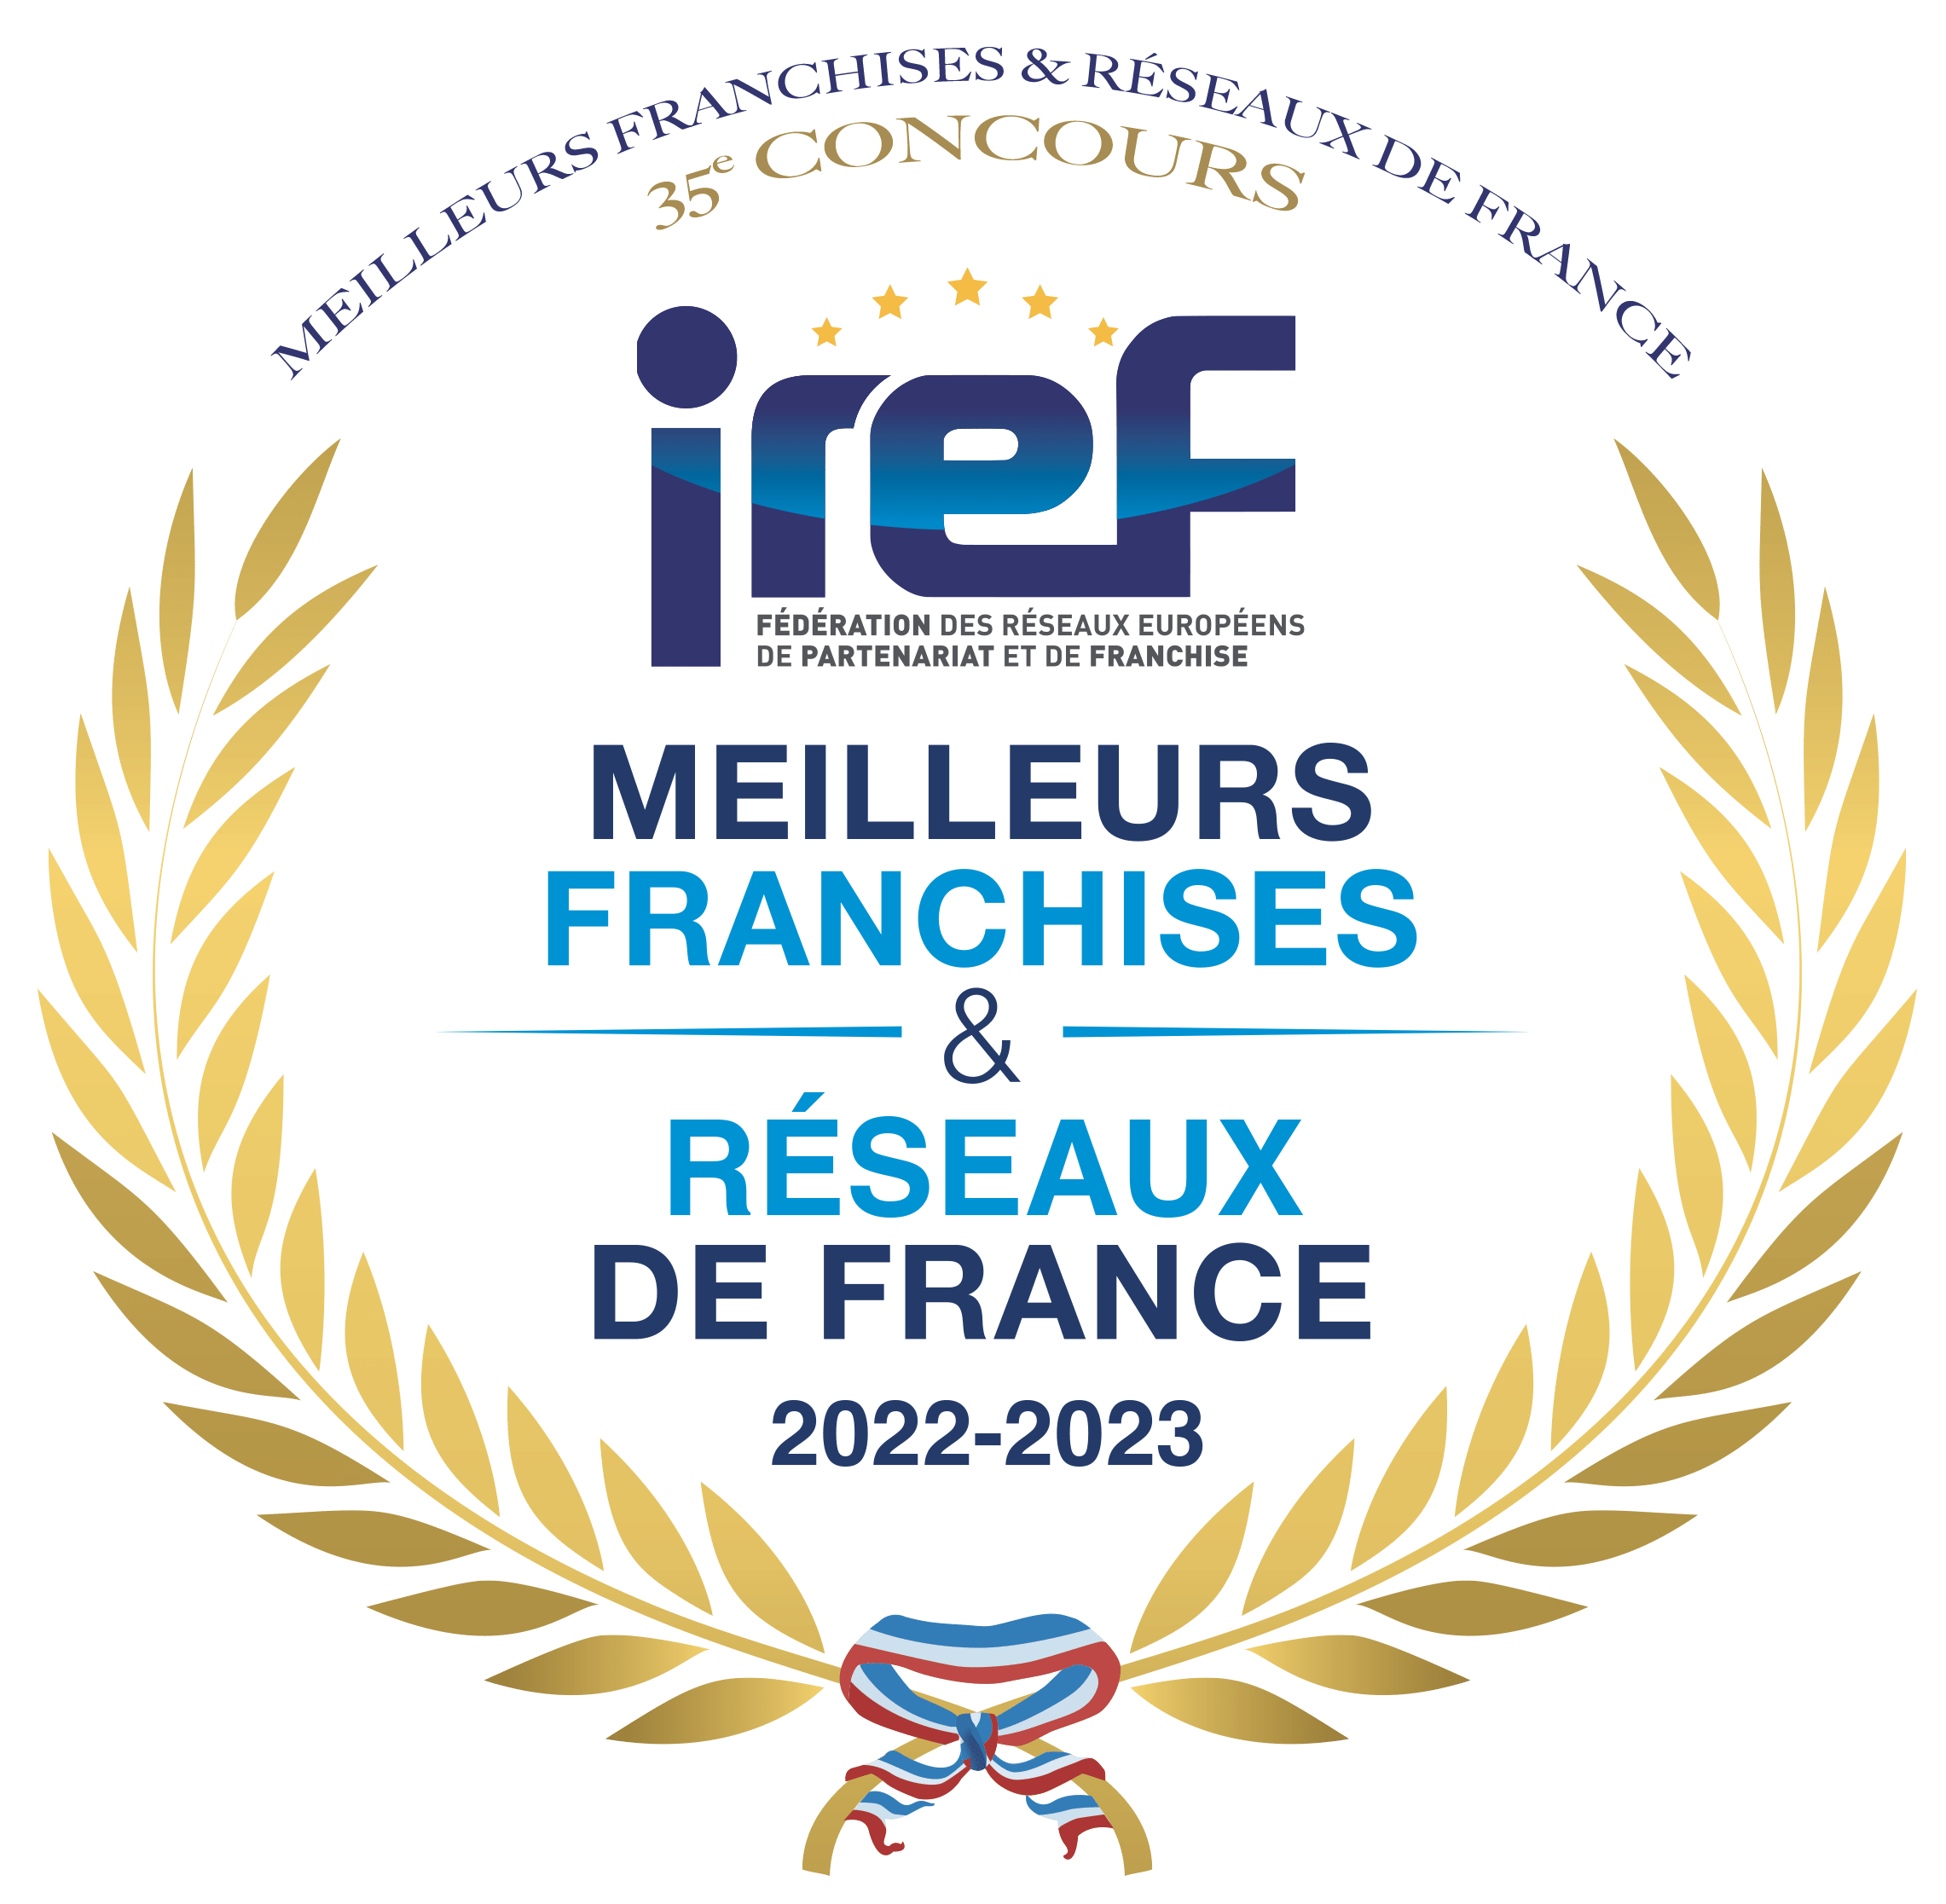 IREF 2022 2023 - Meilleures Franchises & Réseaux de France